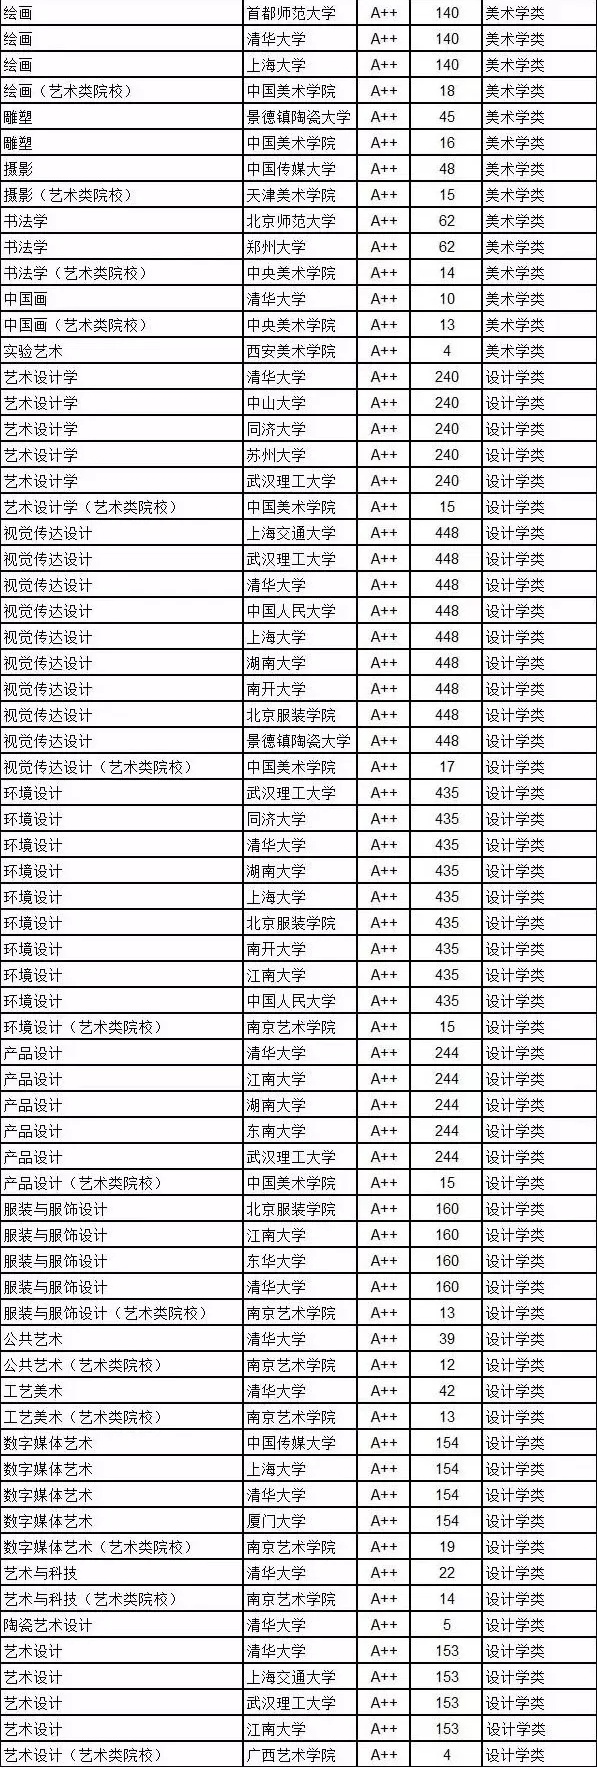 2018年中国大学艺术学专业A++院校名单曝光